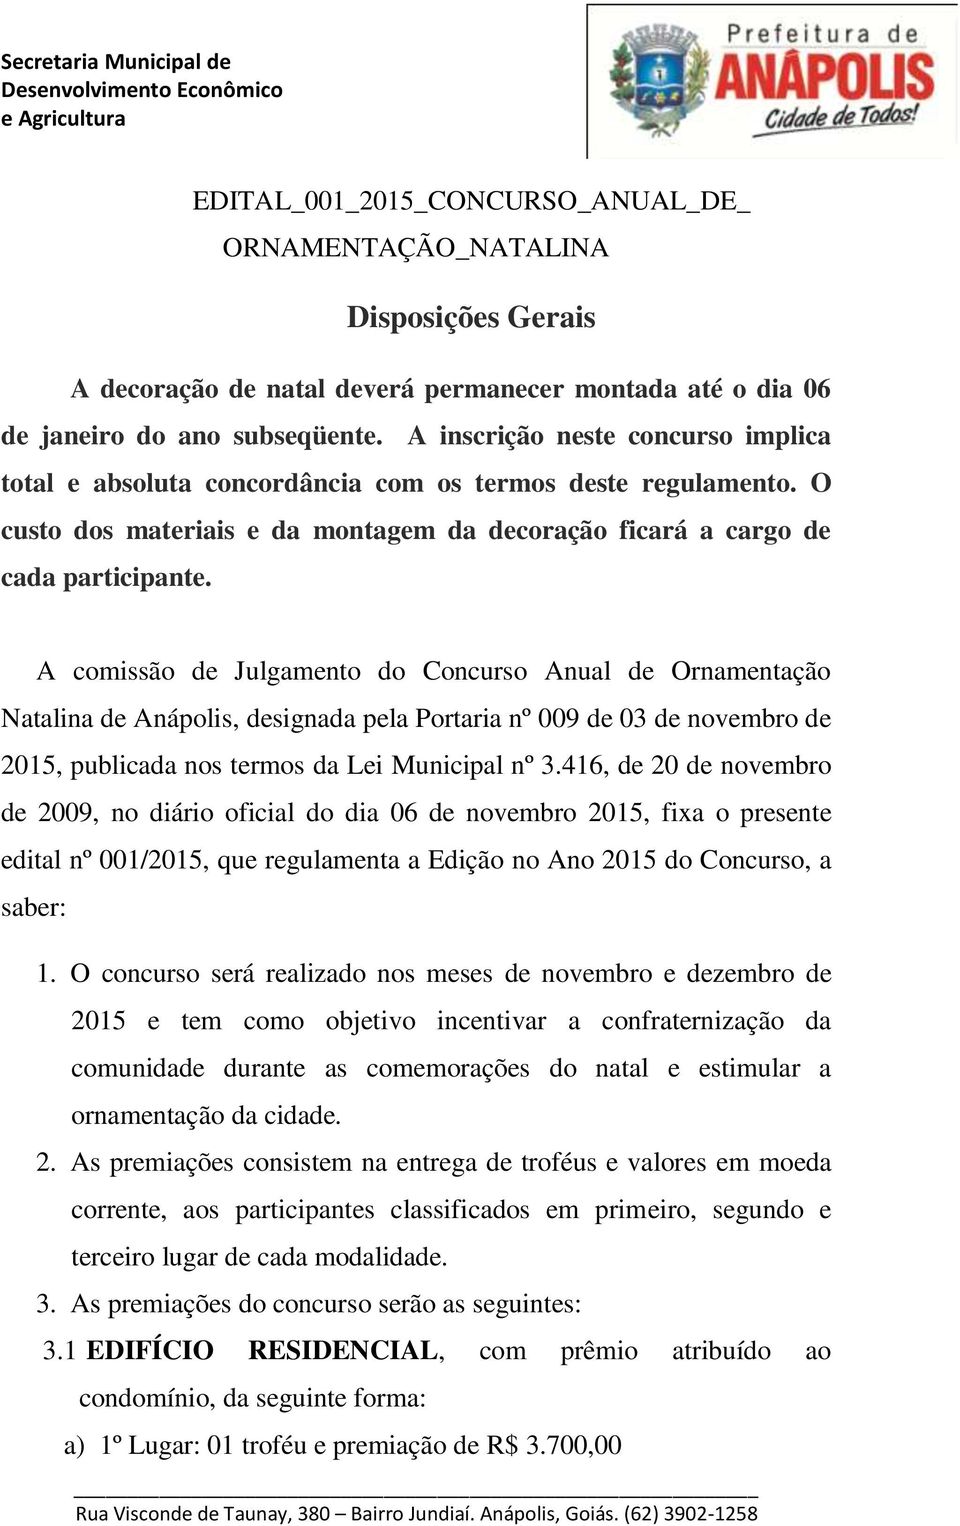 A comissão de Julgamento do Concurso Anual de Ornamentação Natalina de Anápolis, designada pela Portaria nº 009 de 03 de novembro de 2015, publicada nos termos da Lei Municipal nº 3.